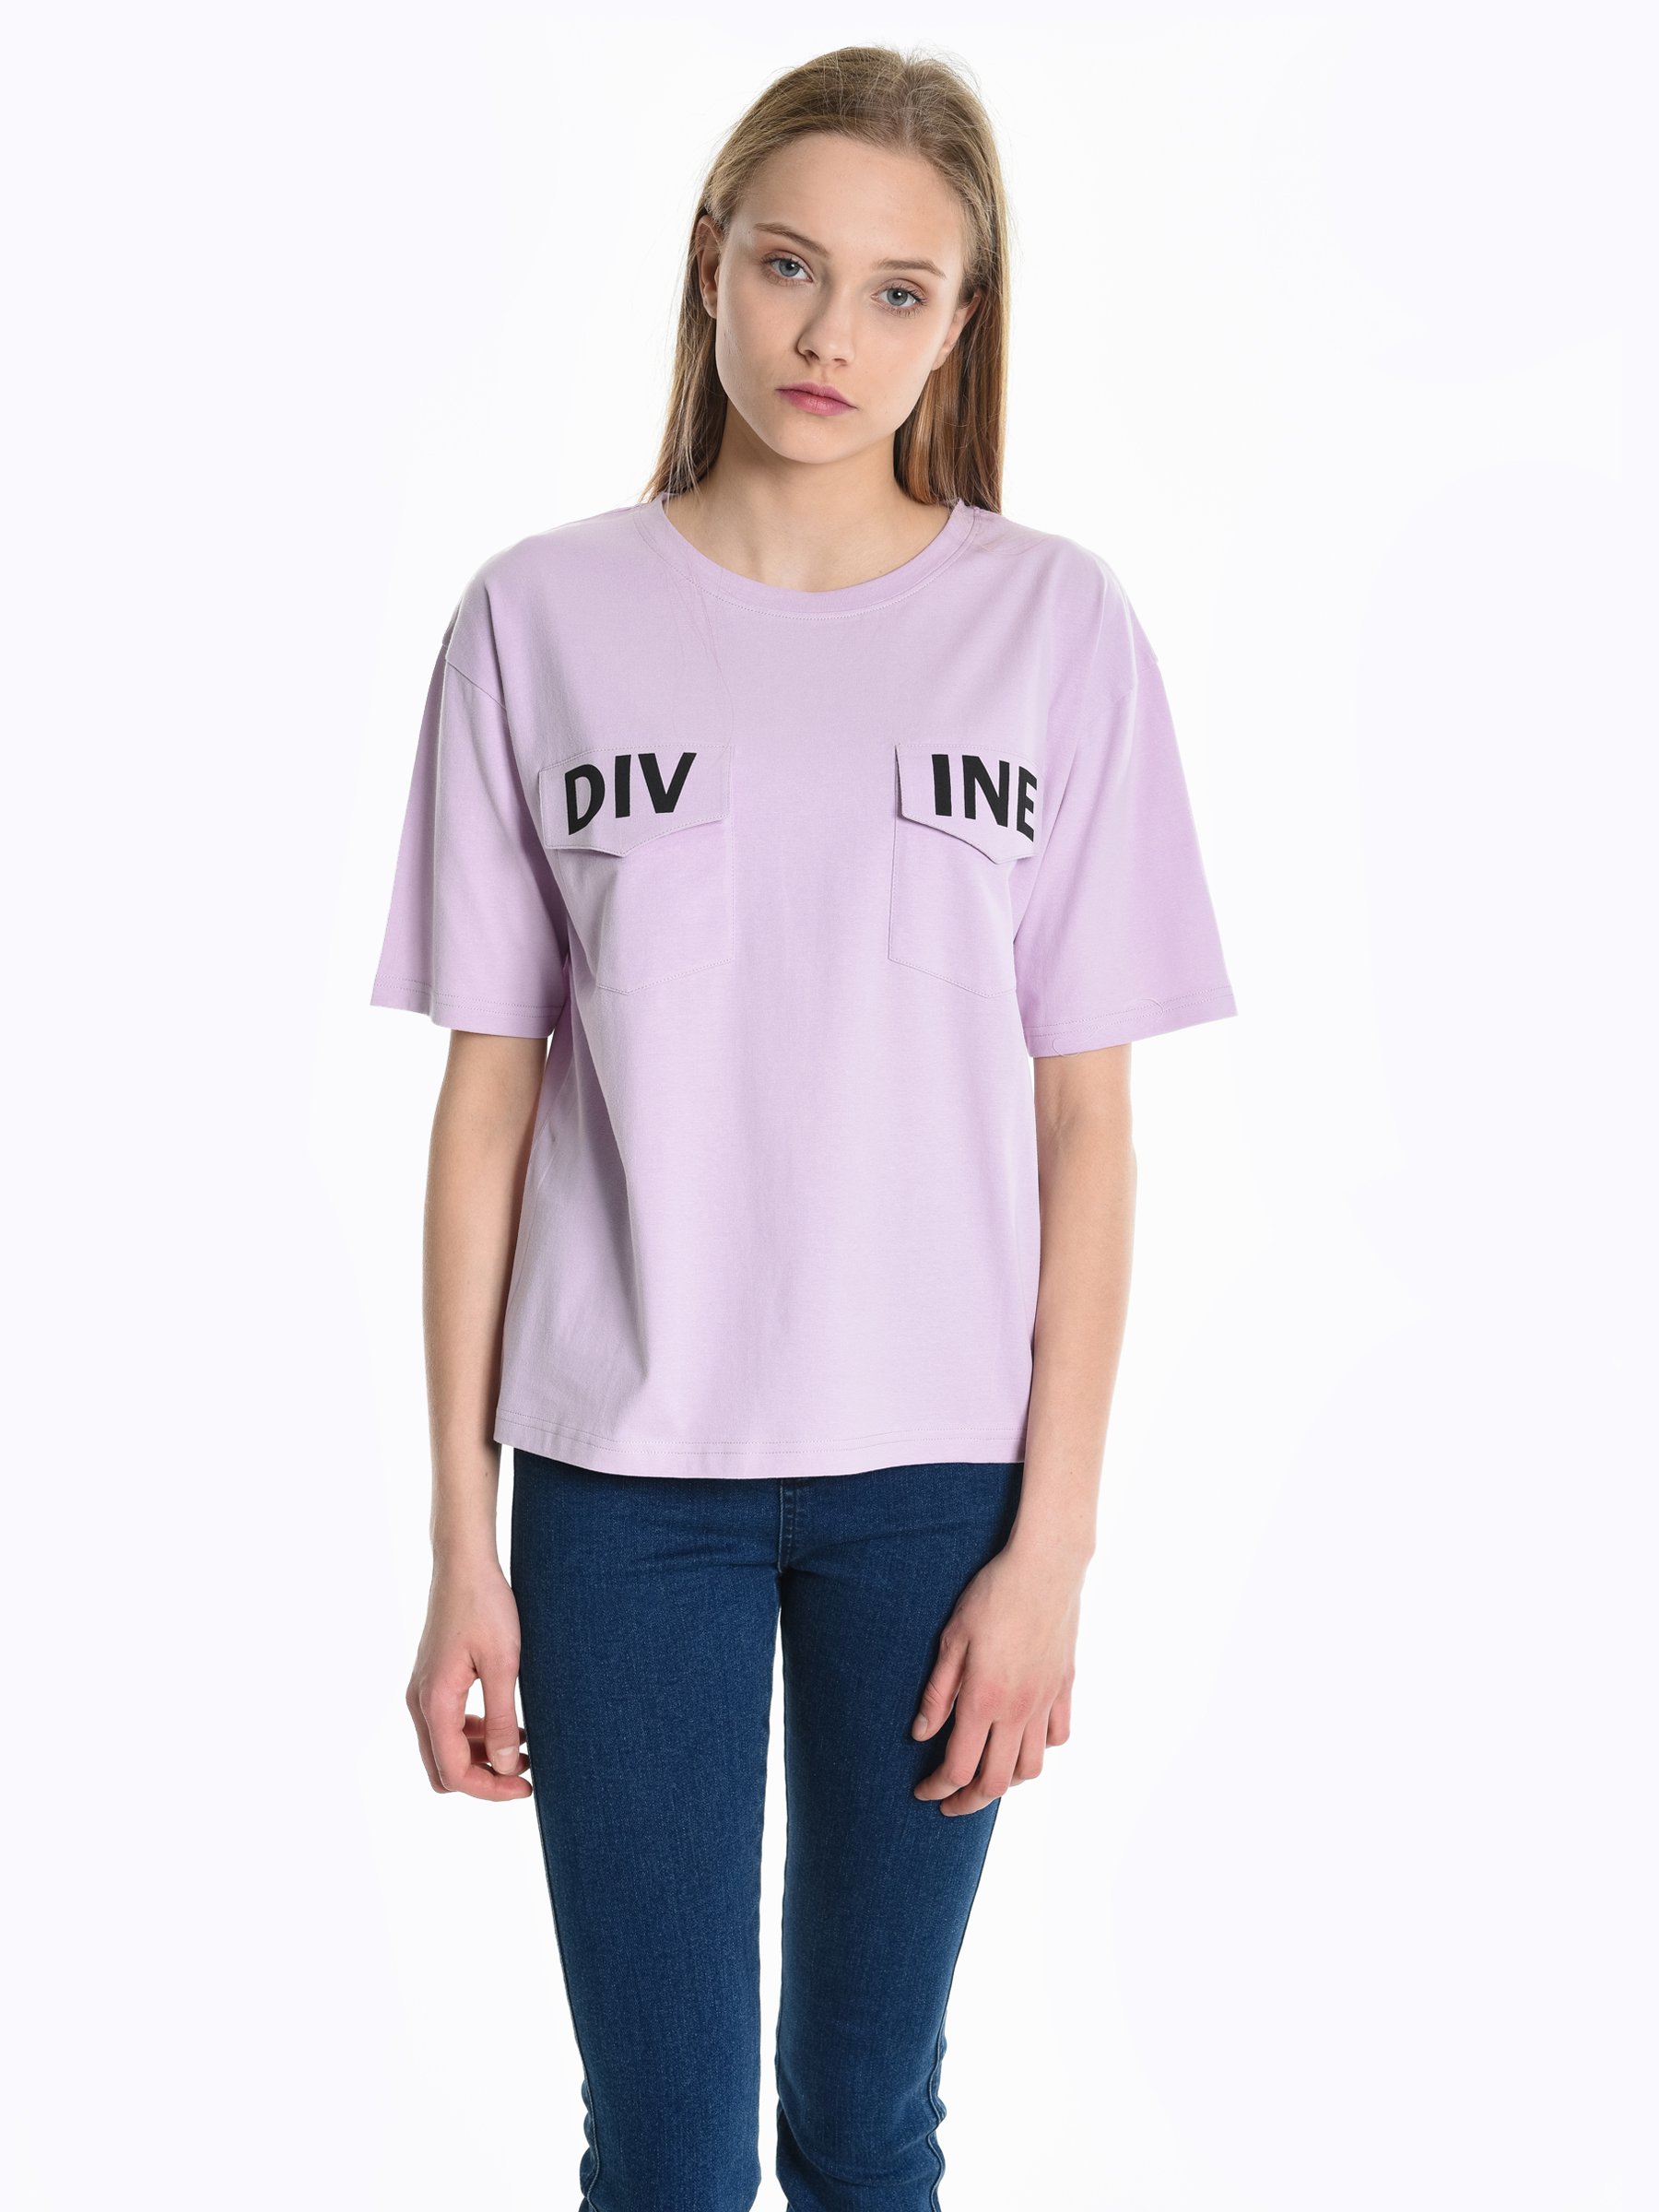 divine doe pink shirt